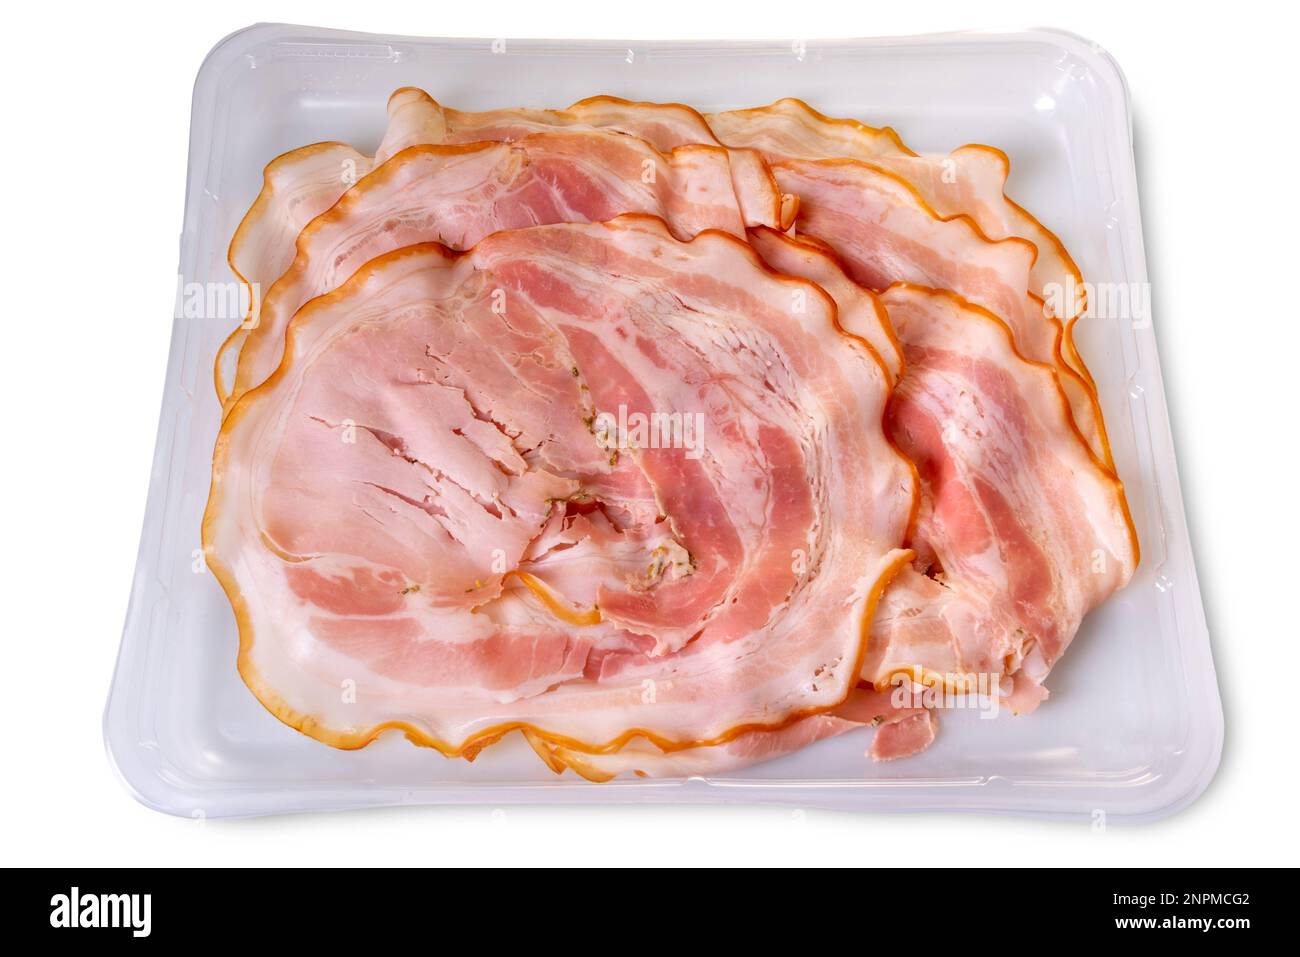 Jambon italien Porchetta, tranches de rôti de porc dans un plateau alimentaire en plastique pour la vente au supermarché, isolé sur blanc avec un chemin de coupure Banque D'Images